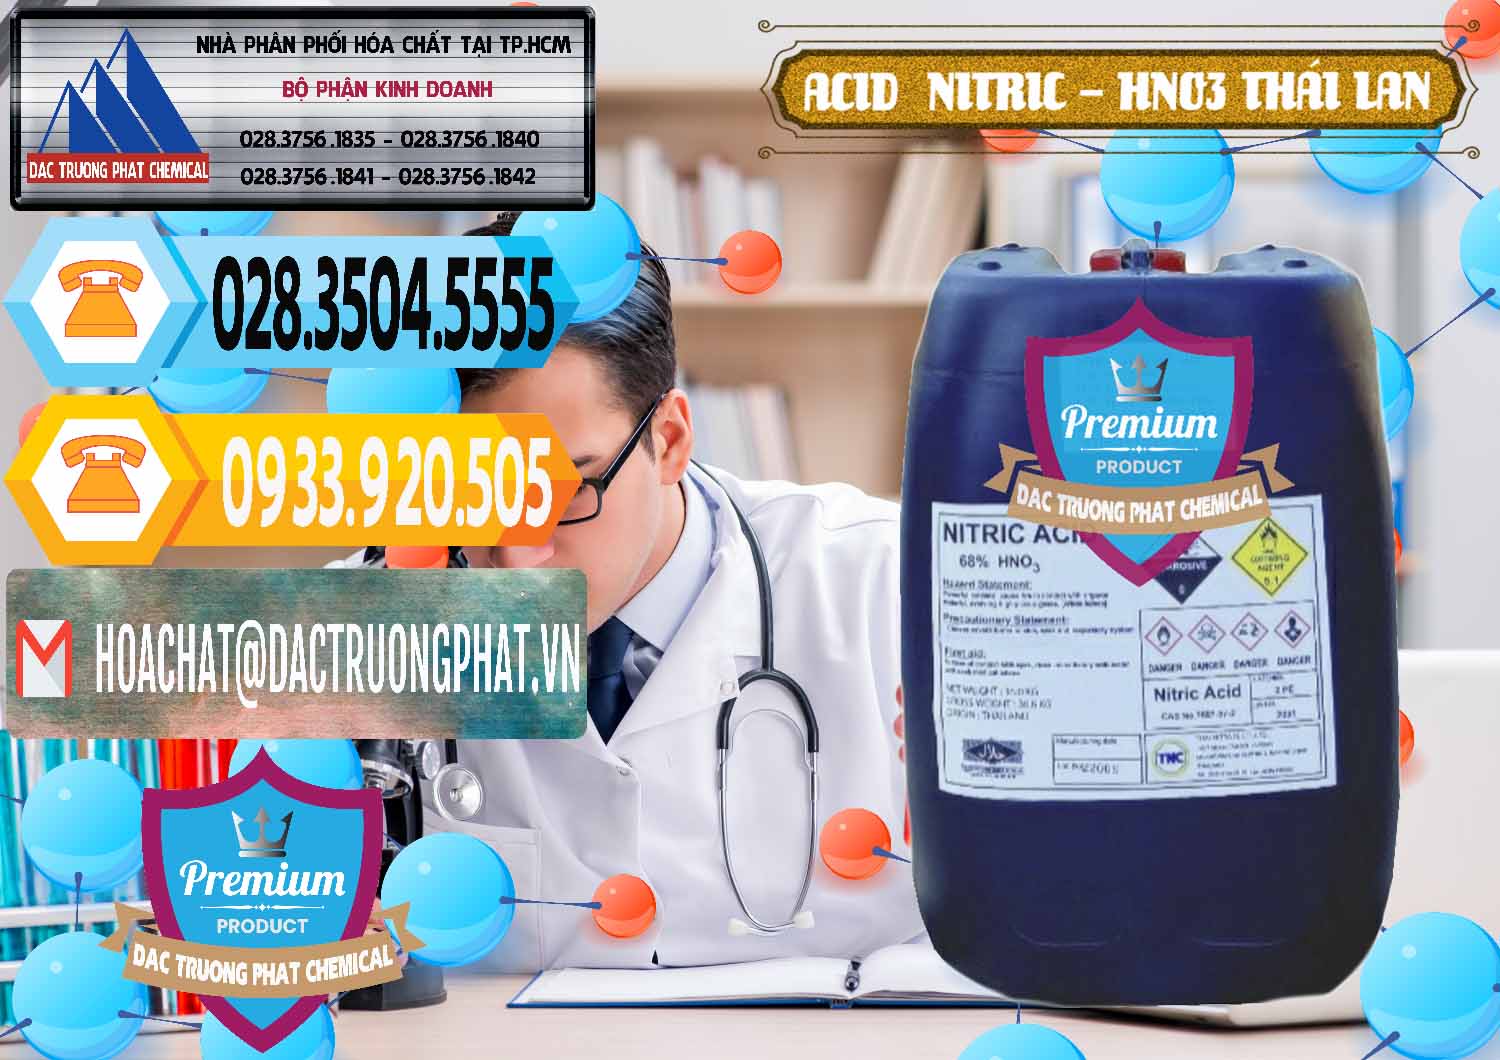 Chuyên kinh doanh ( bán ) Acid Nitric – Axit Nitric HNO3 Thái Lan Thailand - 0344 - Cty nhập khẩu và cung cấp hóa chất tại TP.HCM - hoachattayrua.net